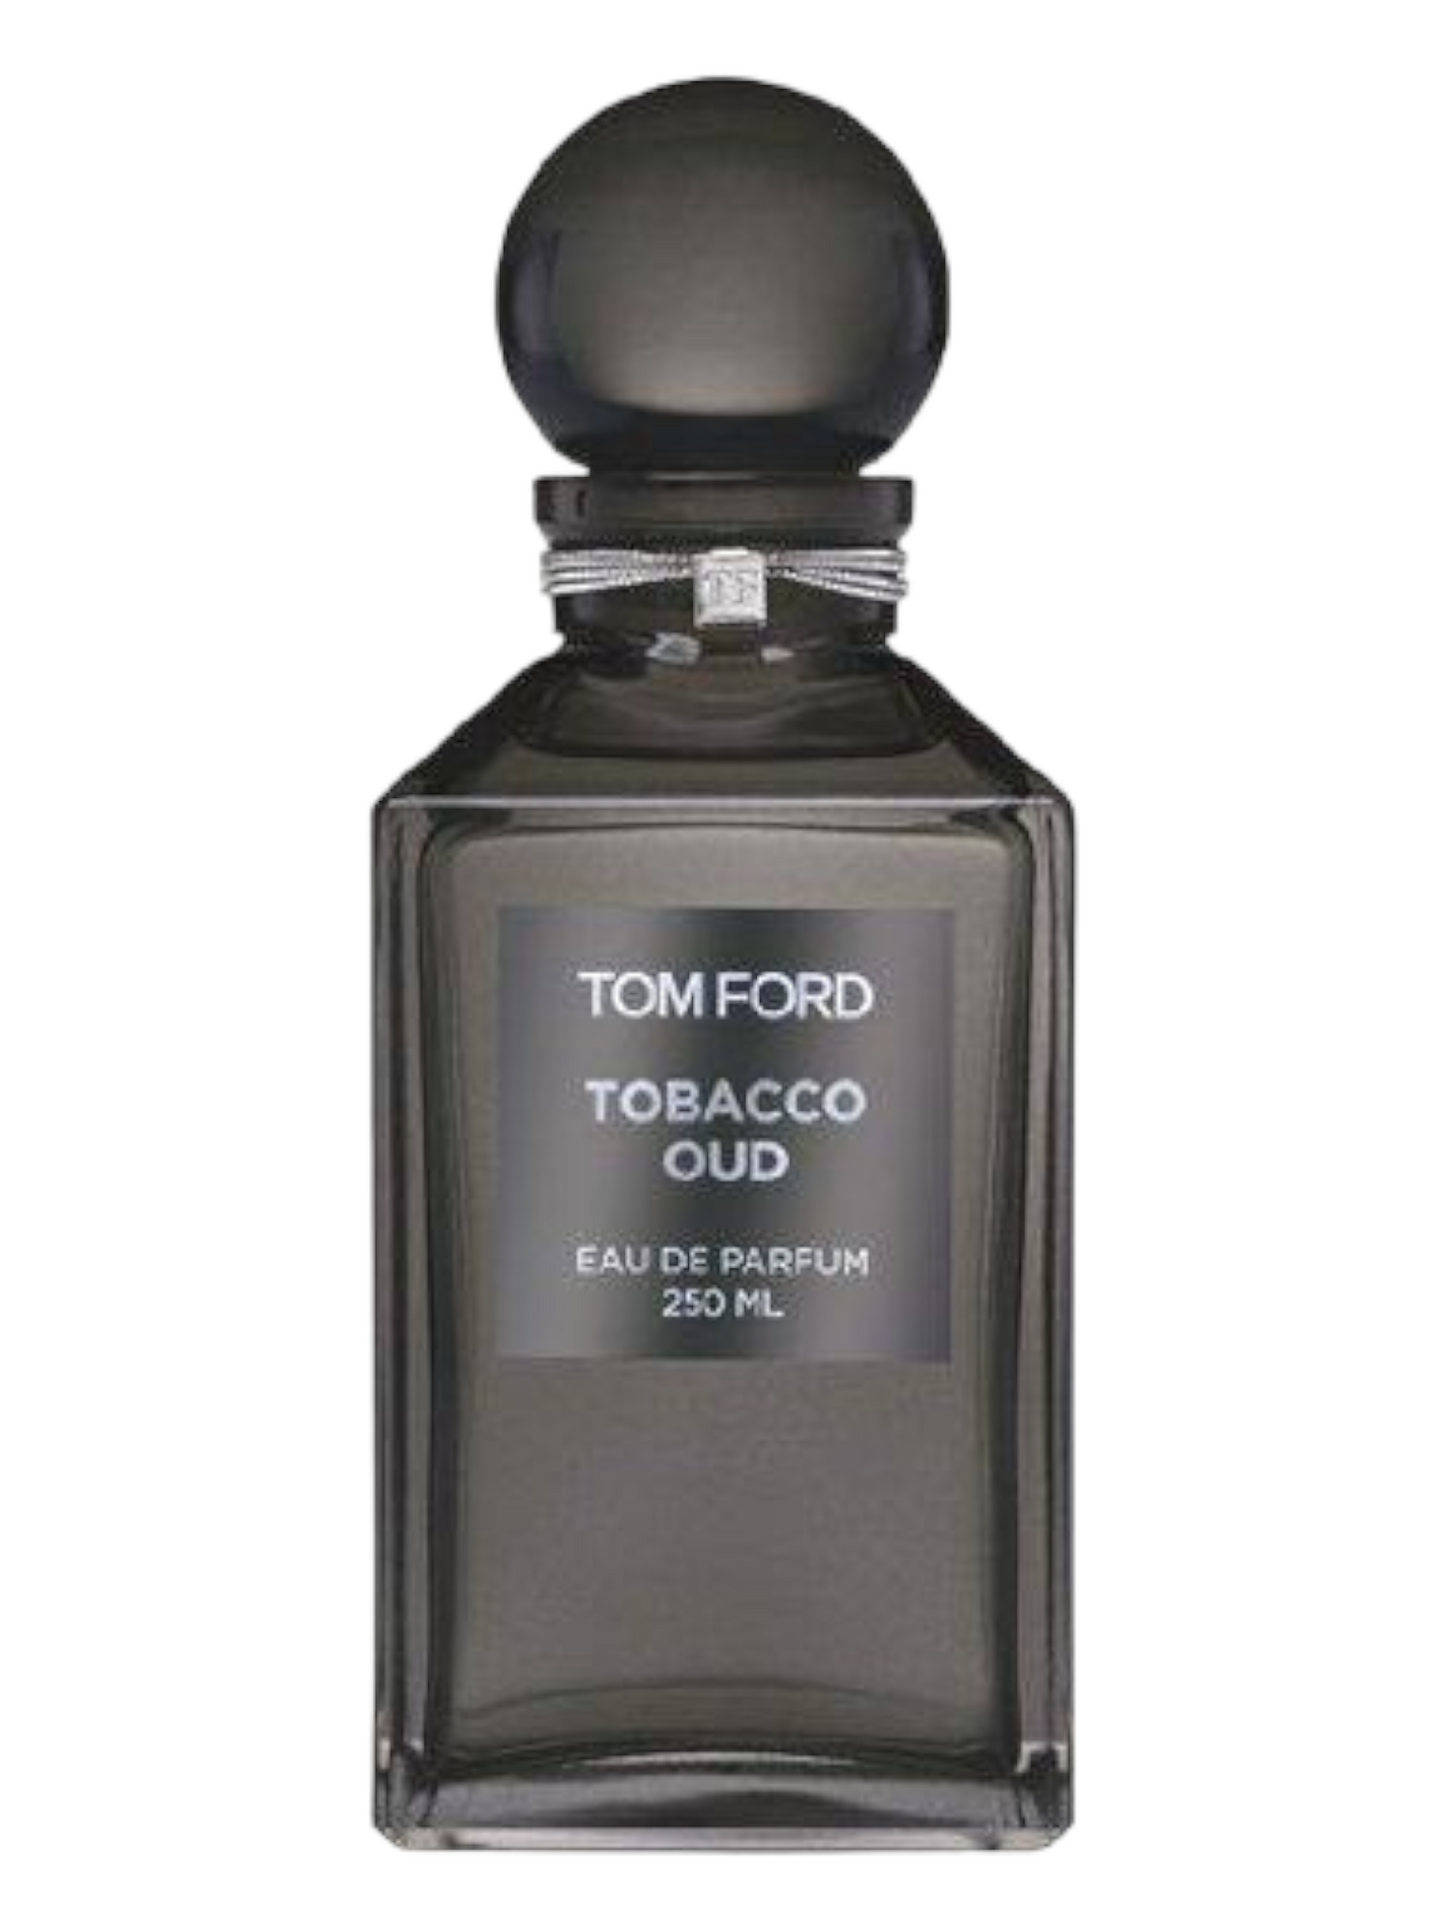 TOM FORD Tobacco Oud Private Blend Eau De Parfum EDP Unisex Decant Select Size